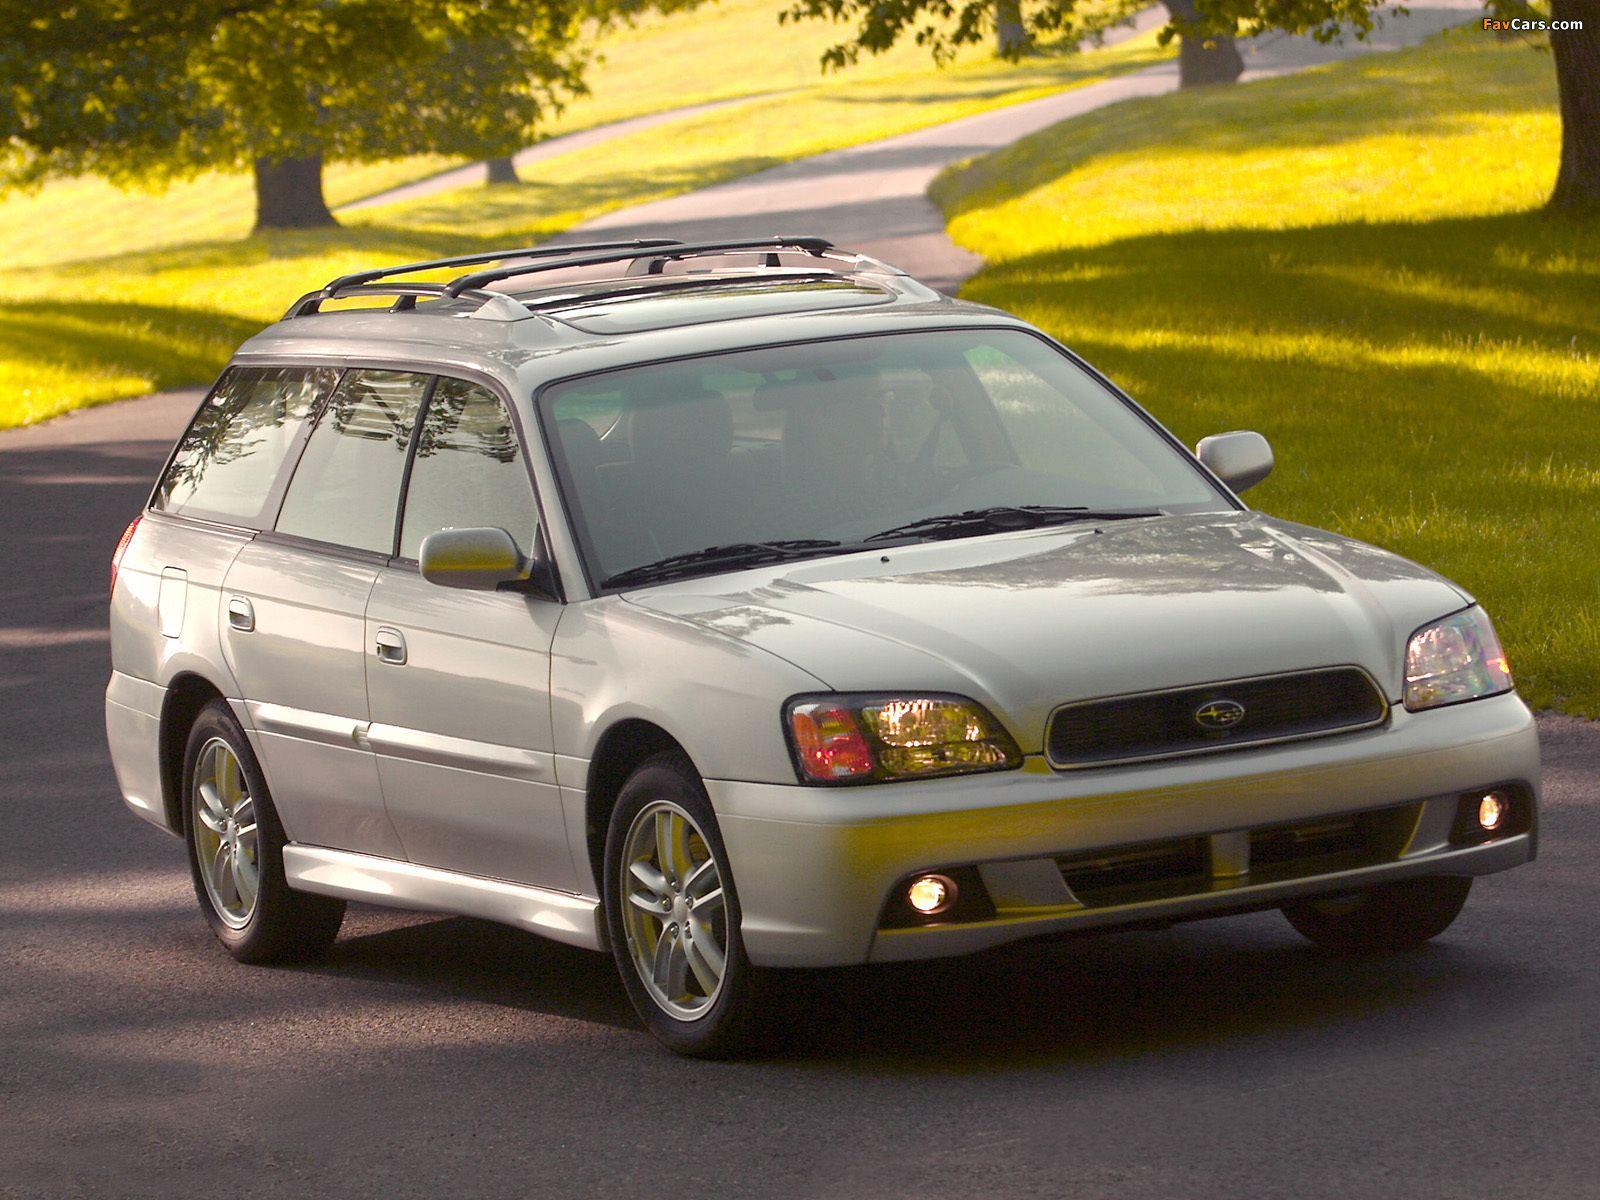 Субару 98 года. 1998 Subaru Legacy Wagon. Subaru Legacy 2003. Subaru Legacy Outback 2003. Subaru Legacy 2.5 1998.